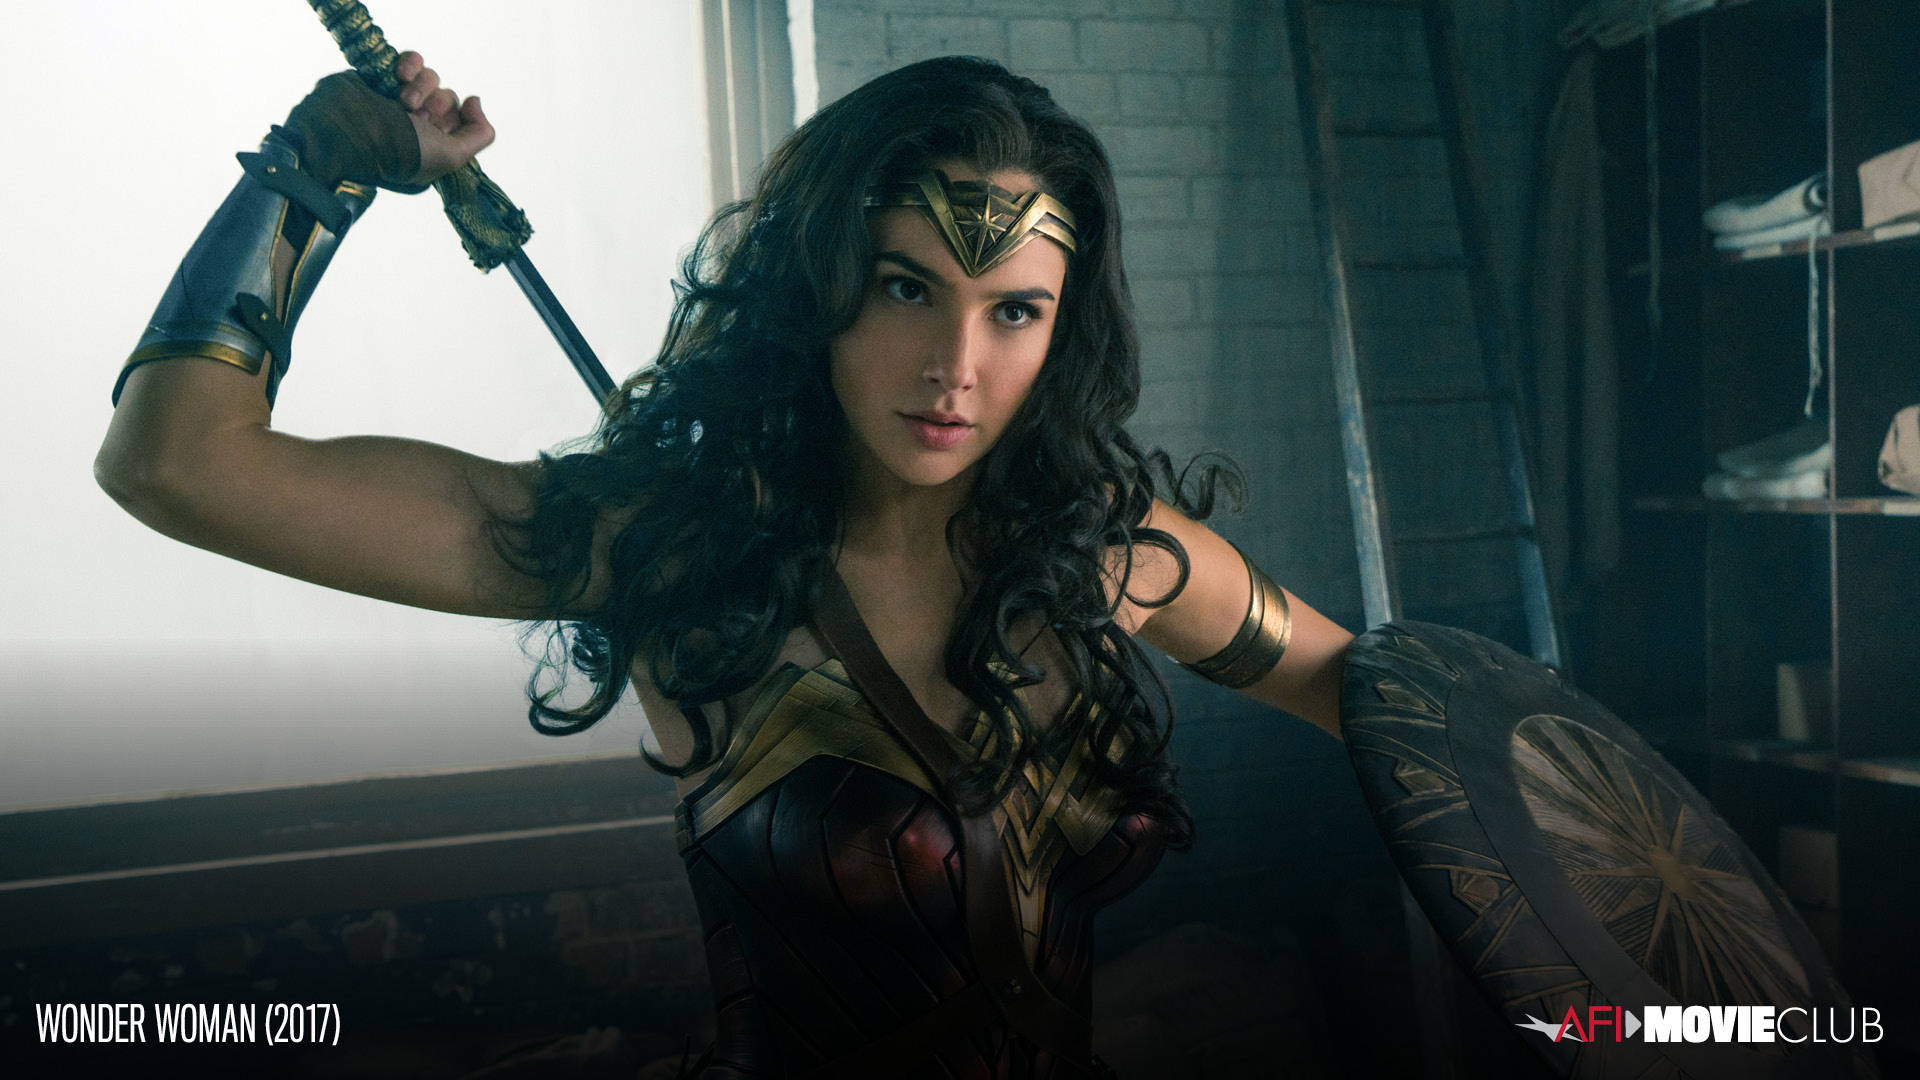 Wonder Woman Film Still - Gal Gadot